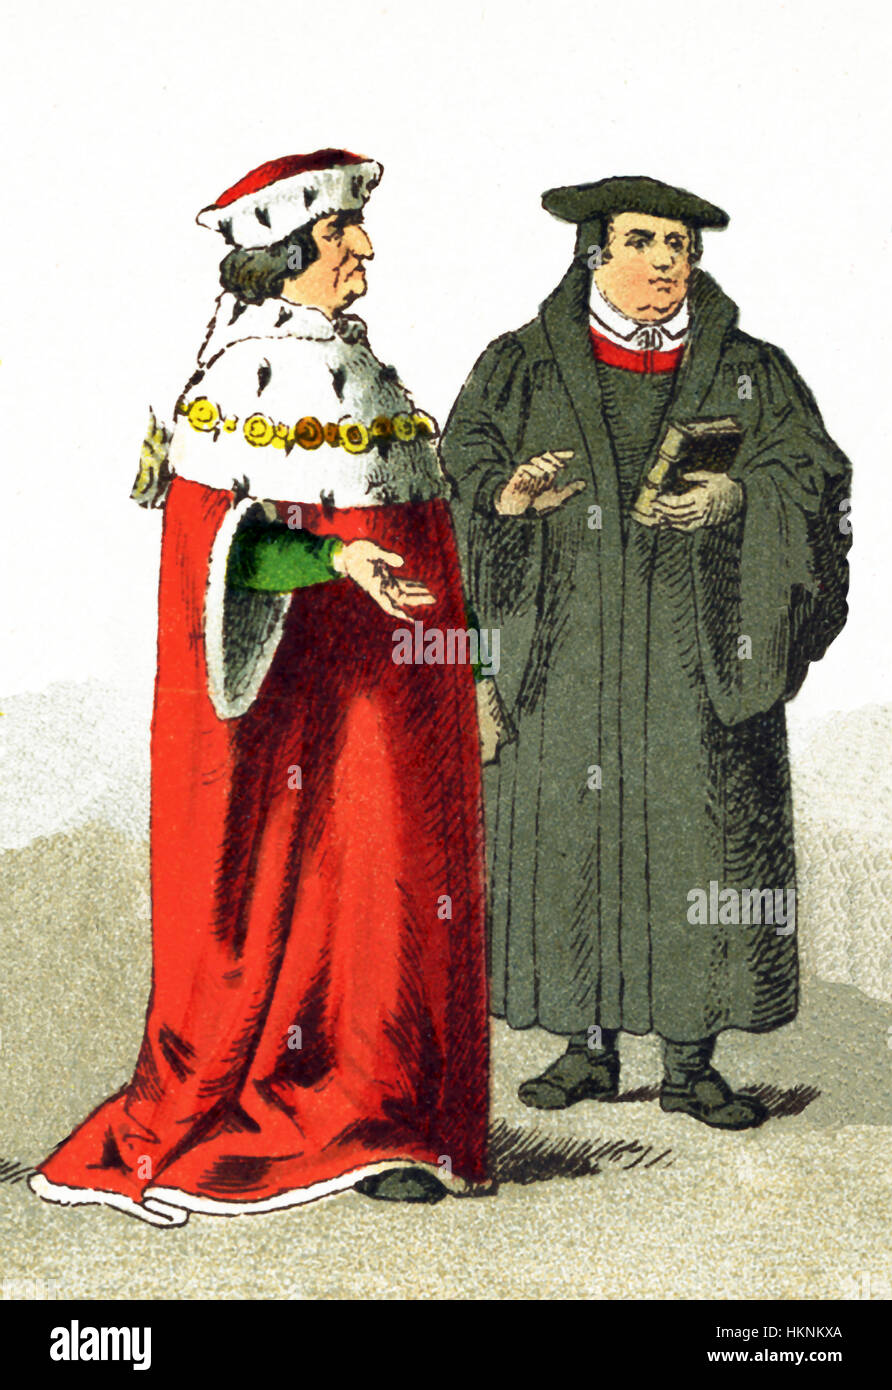 Les figures représentées ici est un électeur et Martin Luther. Les deux sont allemands datant des années 1500. Martin Luther (1483-1746) était chef de la Réforme protestante. Le titre "électeur" était le titre donné un prince allemand le droit de prendre part à l'élection du Saint Empereur Romain. L'illustration dates à 1882. Banque D'Images